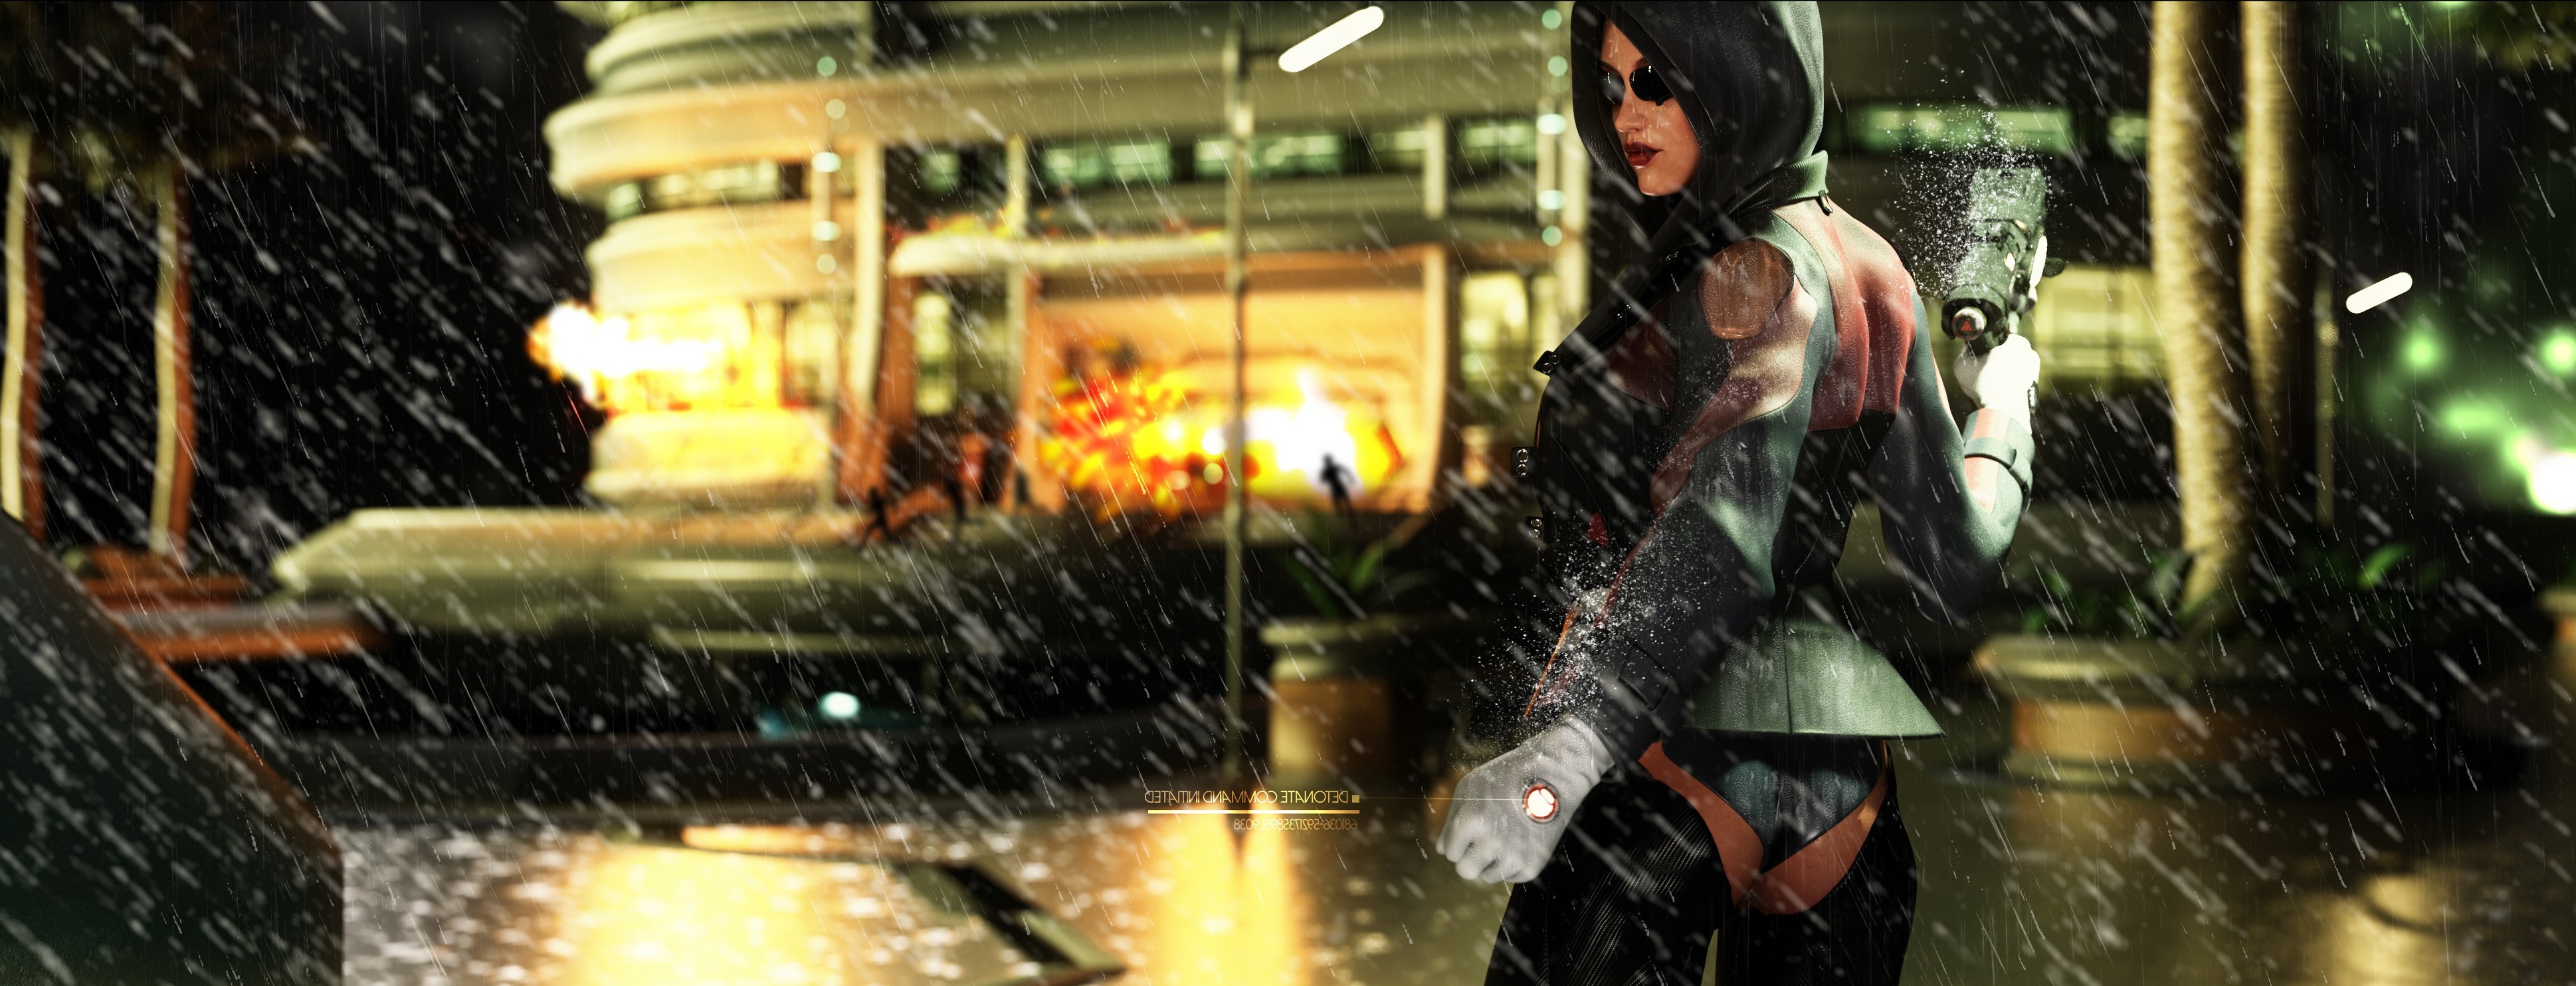 video Games, Deus Ex: Human Revolution Wallpaper